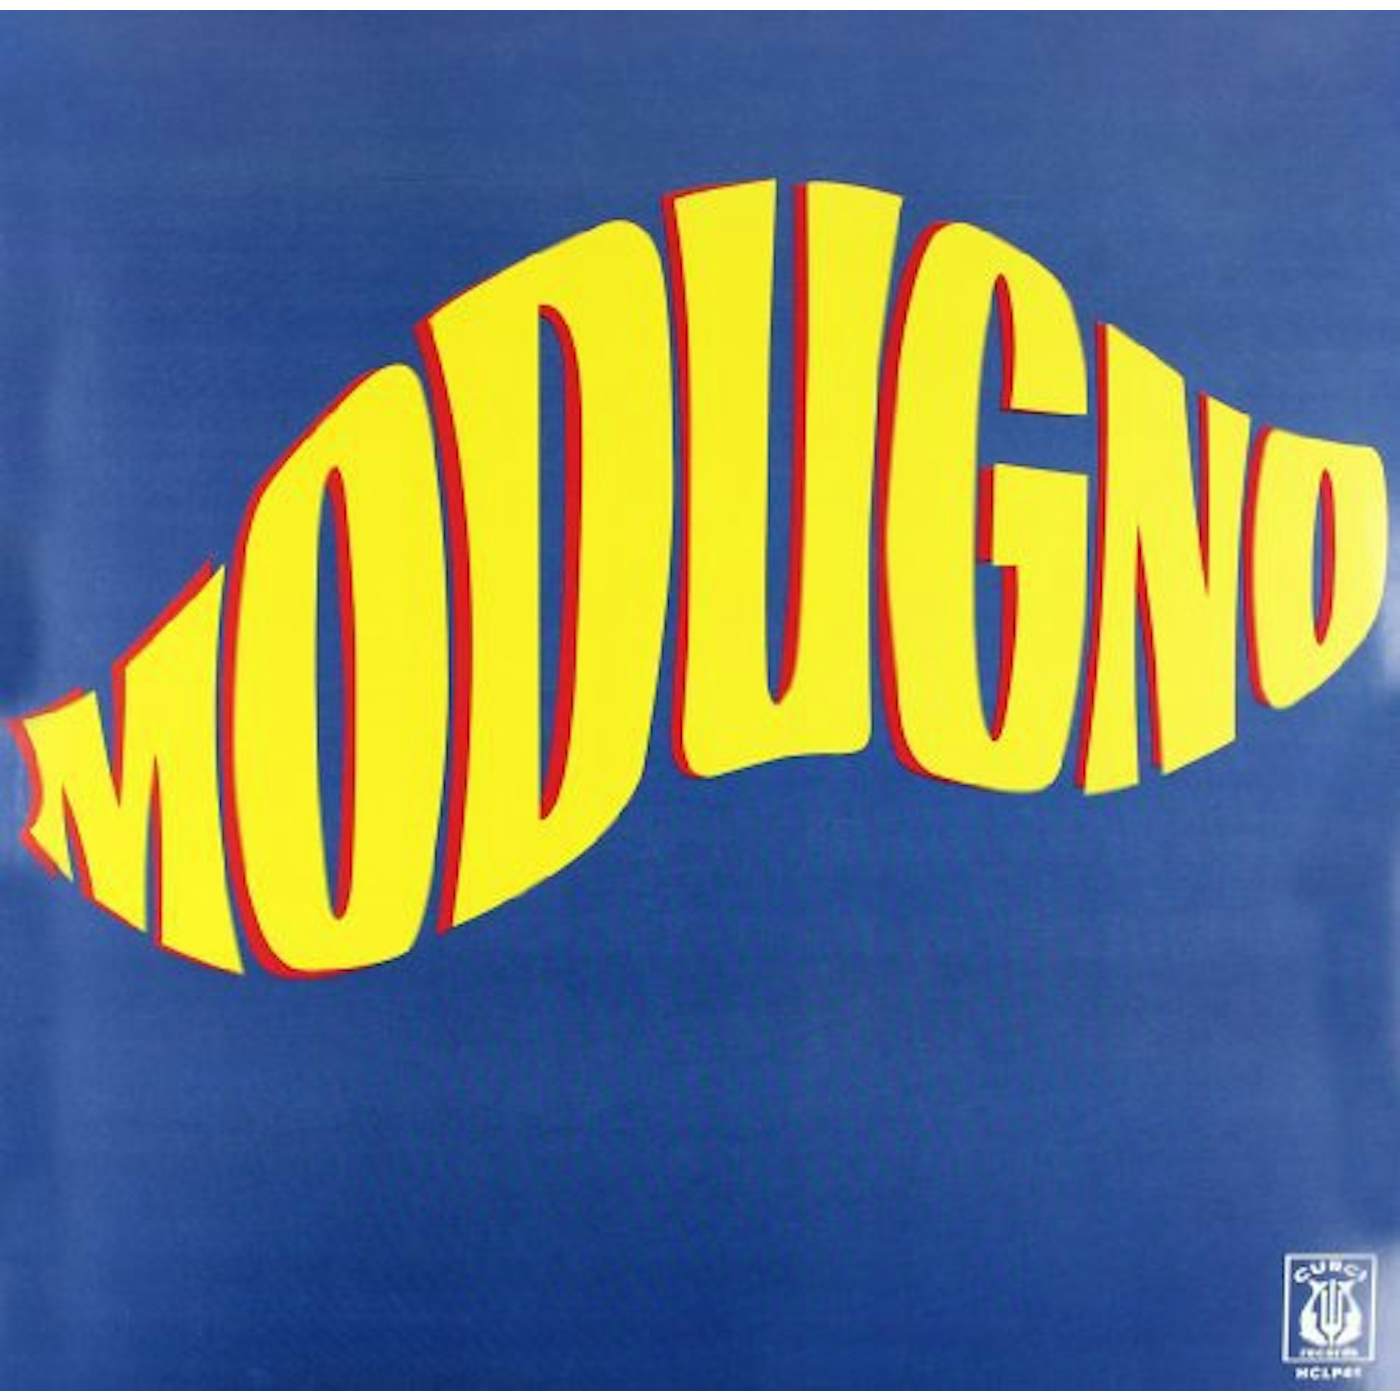 Domenico Modugno MODUGNO Vinyl Record